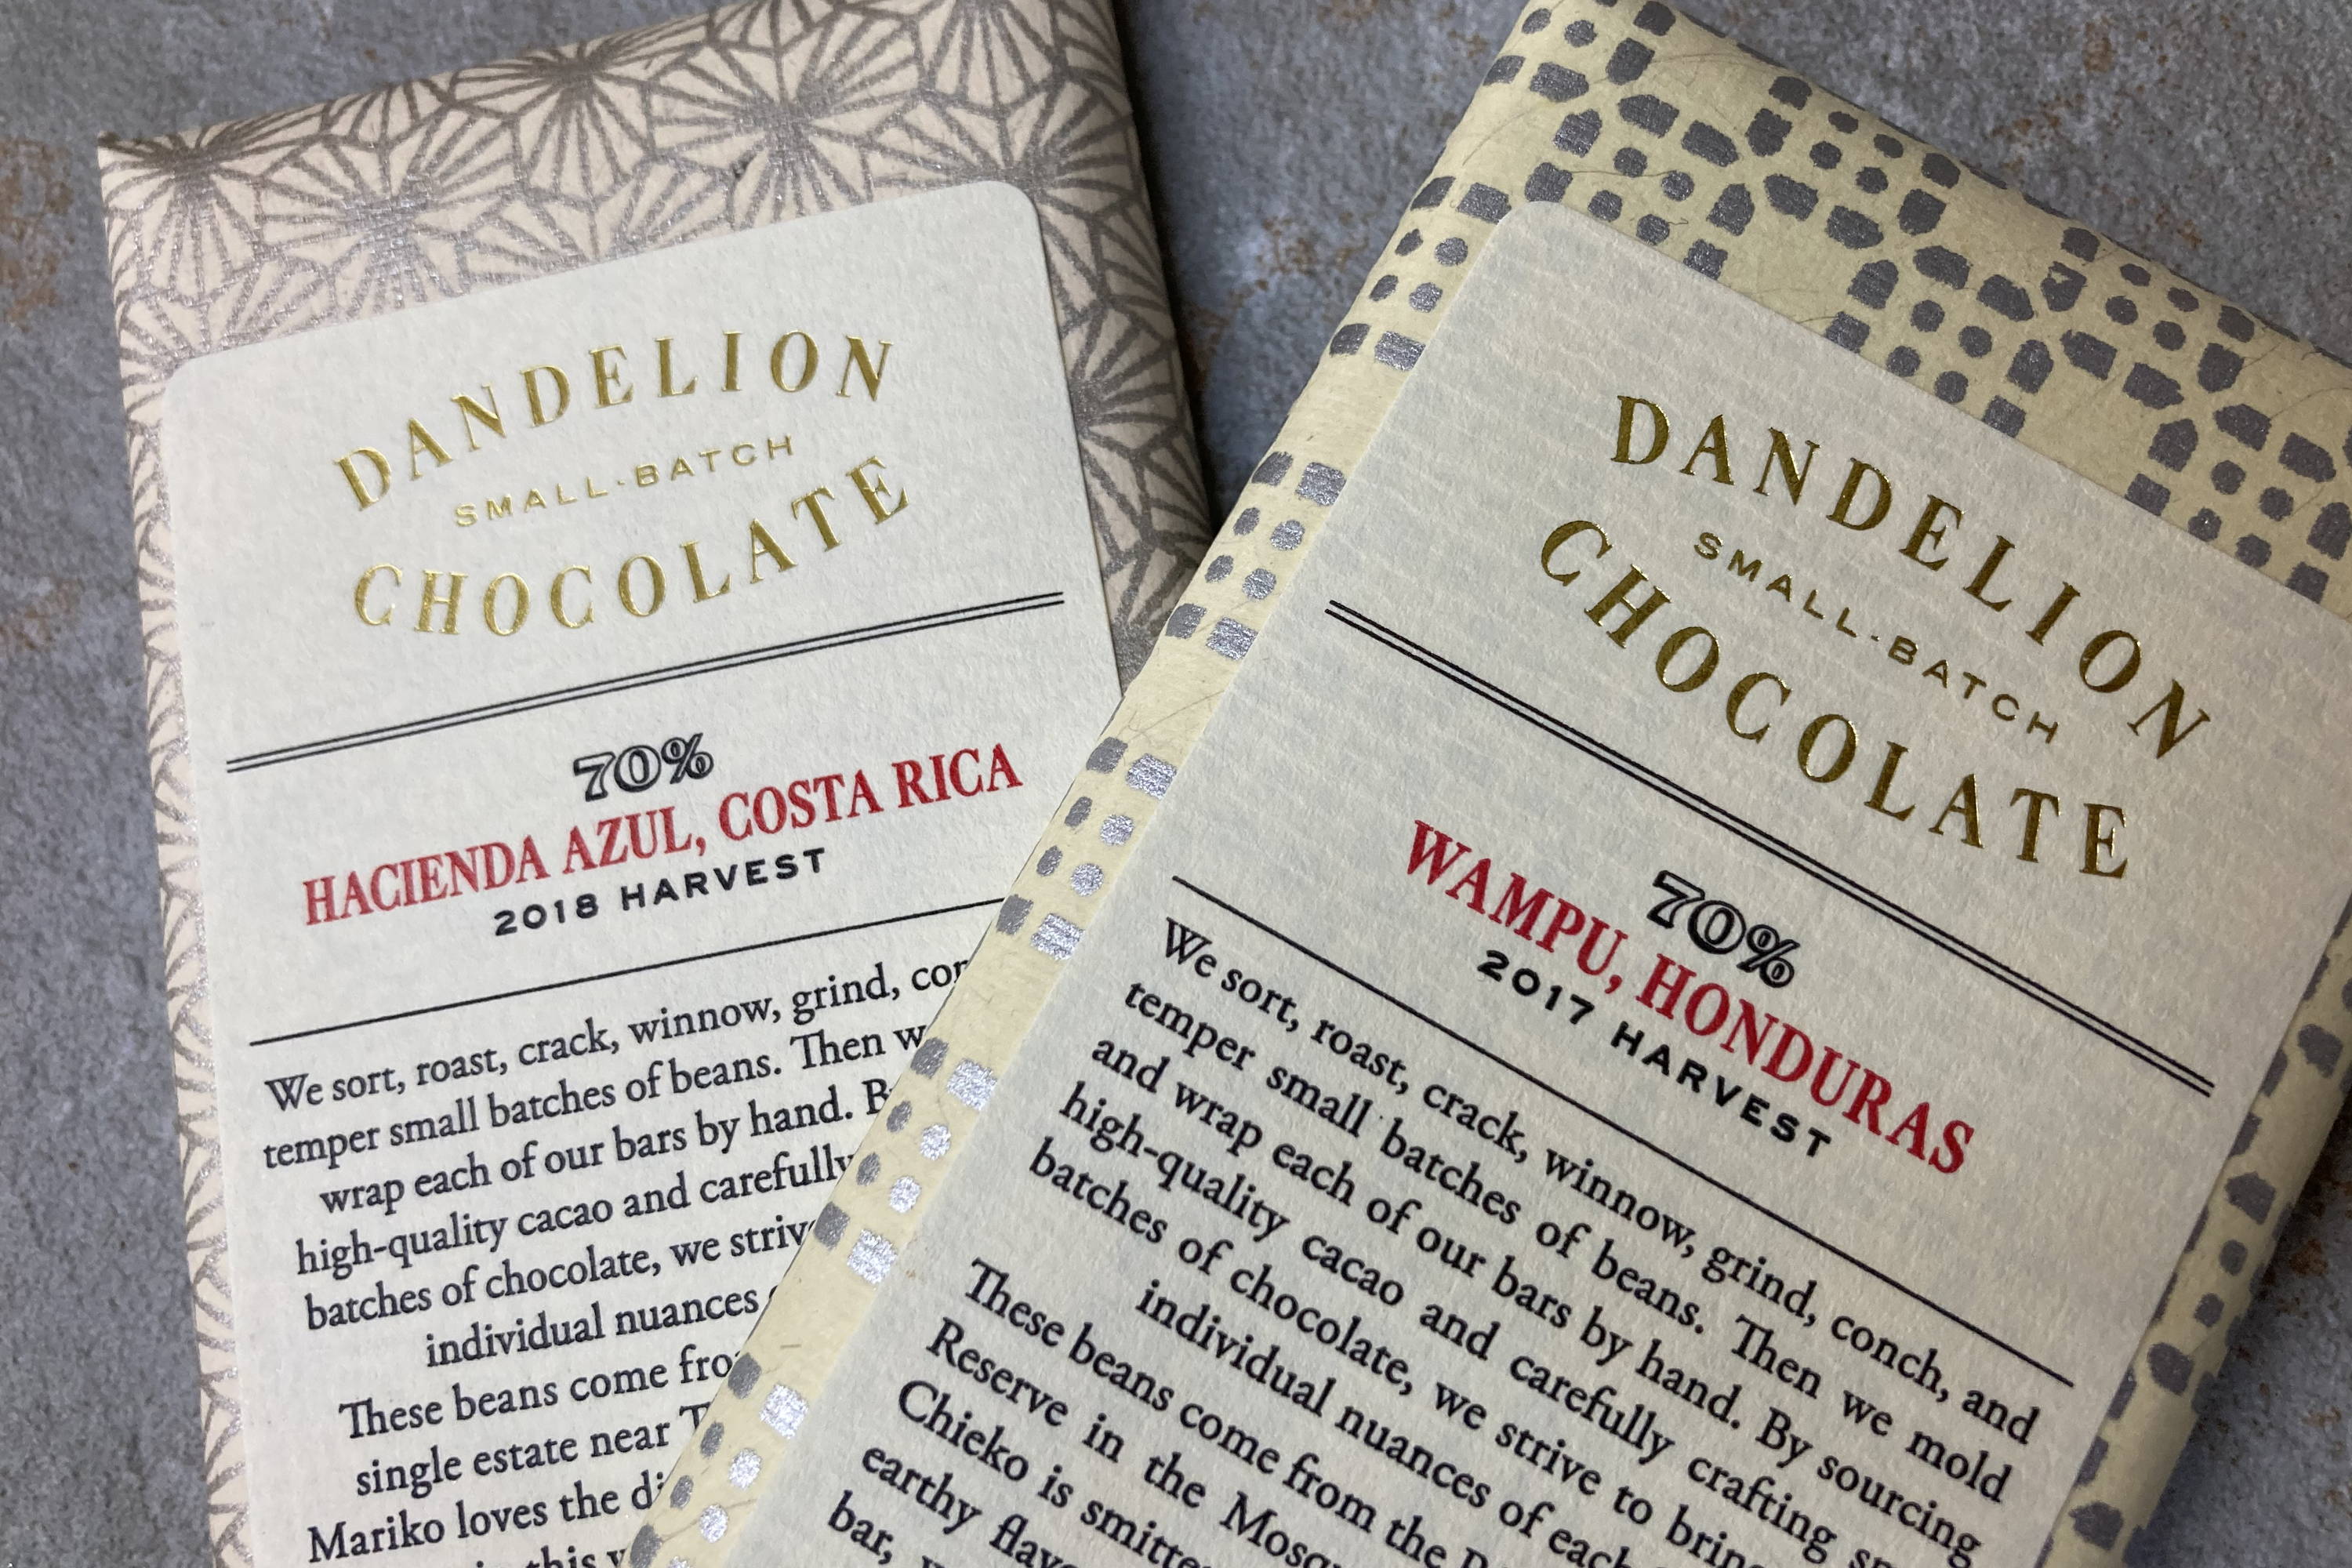 シングルオリジンだからこそ カカオの 産地 を大切に Dandelion Chocolate 公式サイト